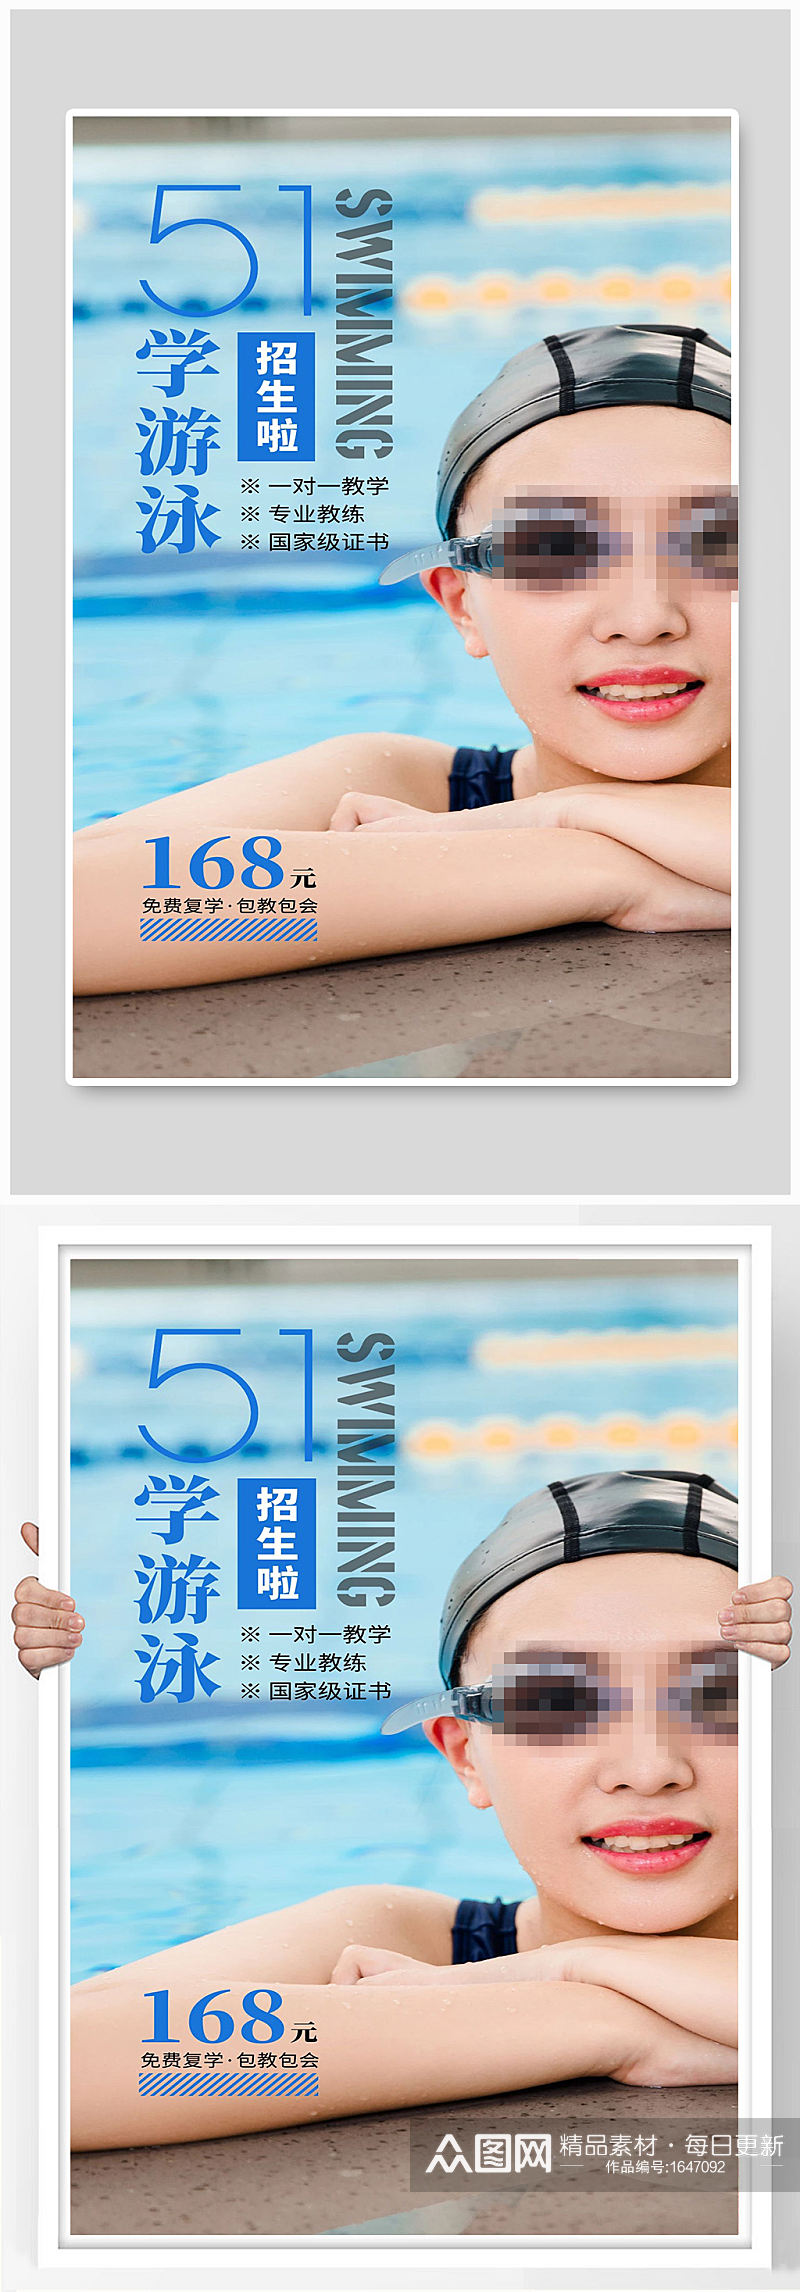 游泳宣传海报设计制作素材